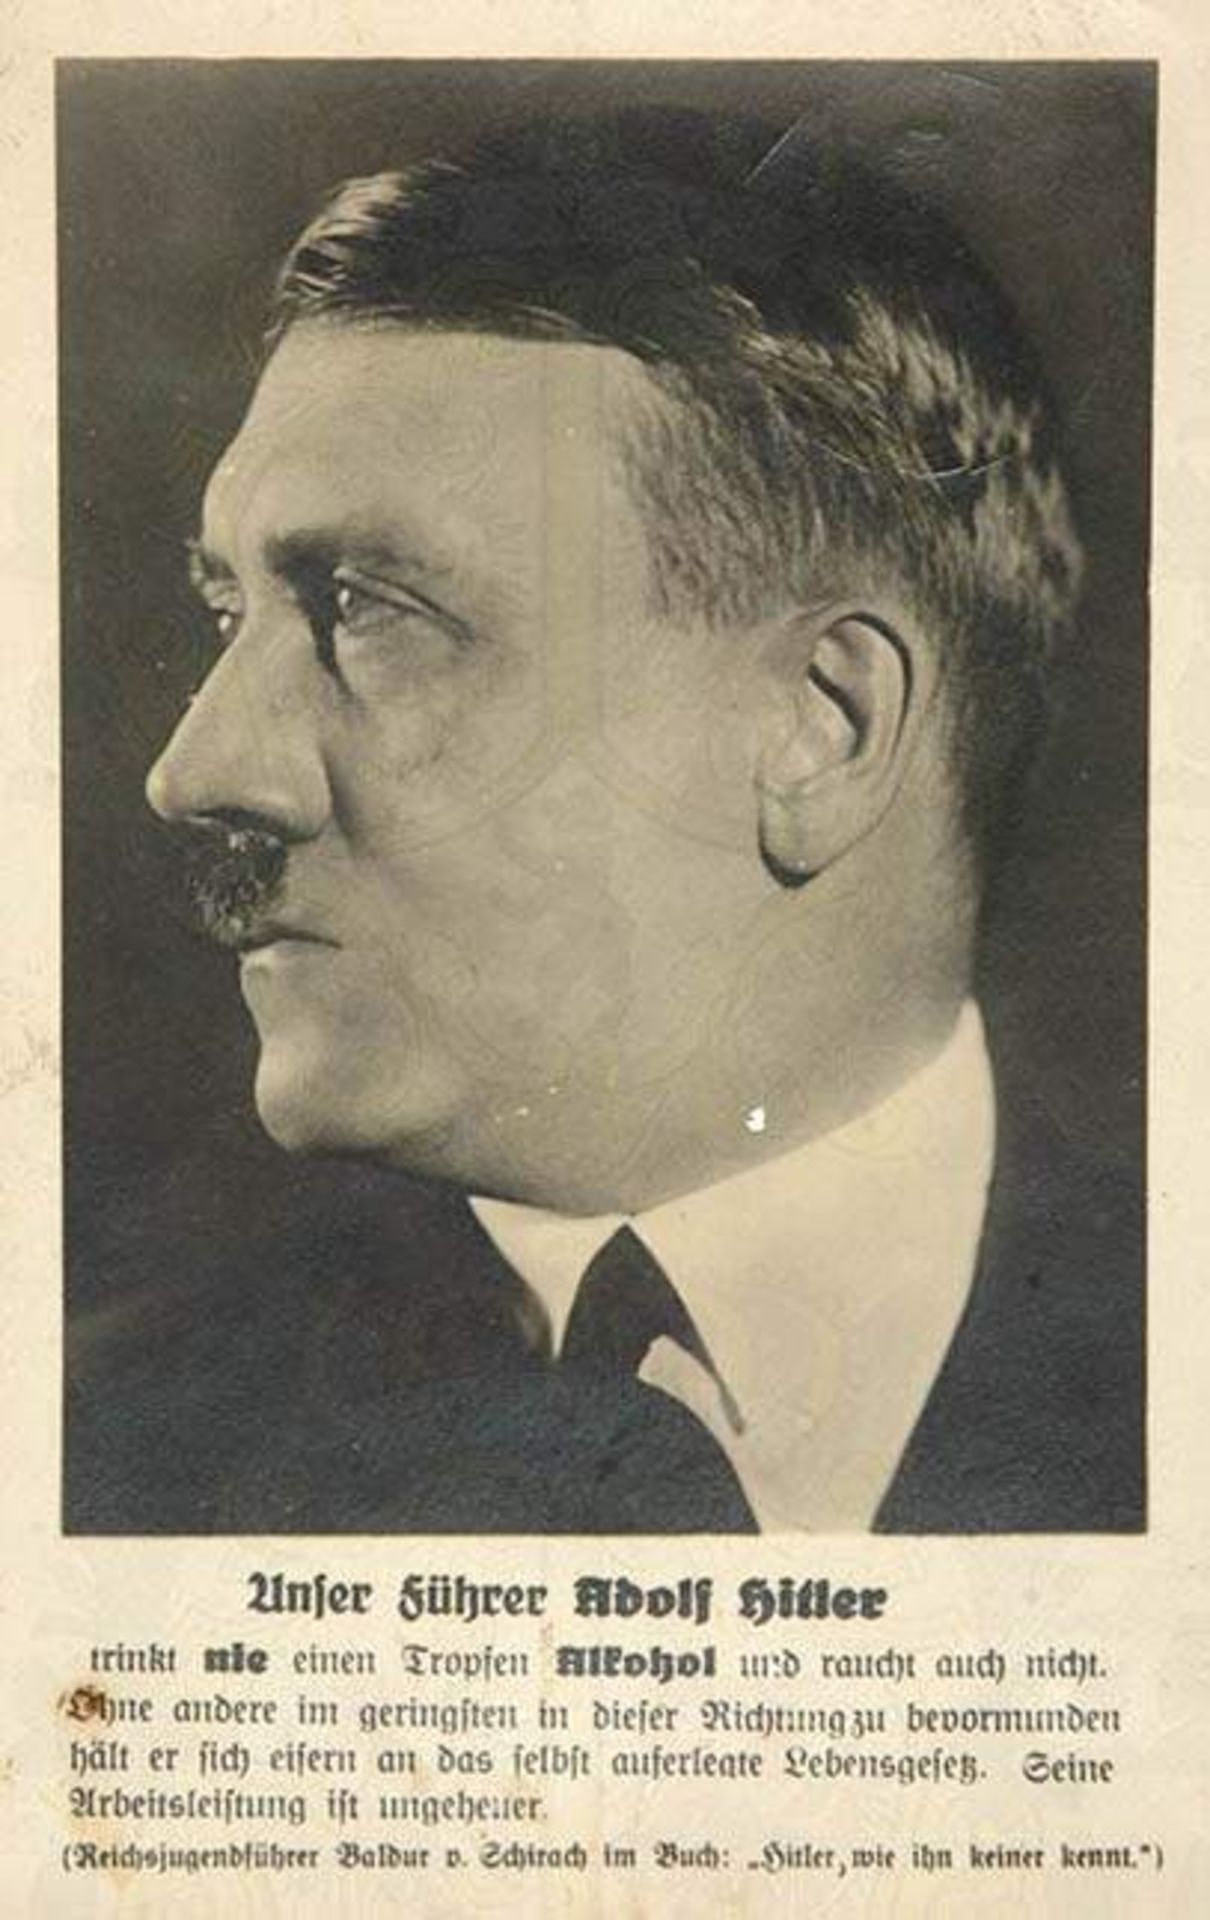 FOTO-AK ADOLF HITLER, Kopfportrait im Profil (um 1930), darunter Textauszug "Unser Führer Adolf